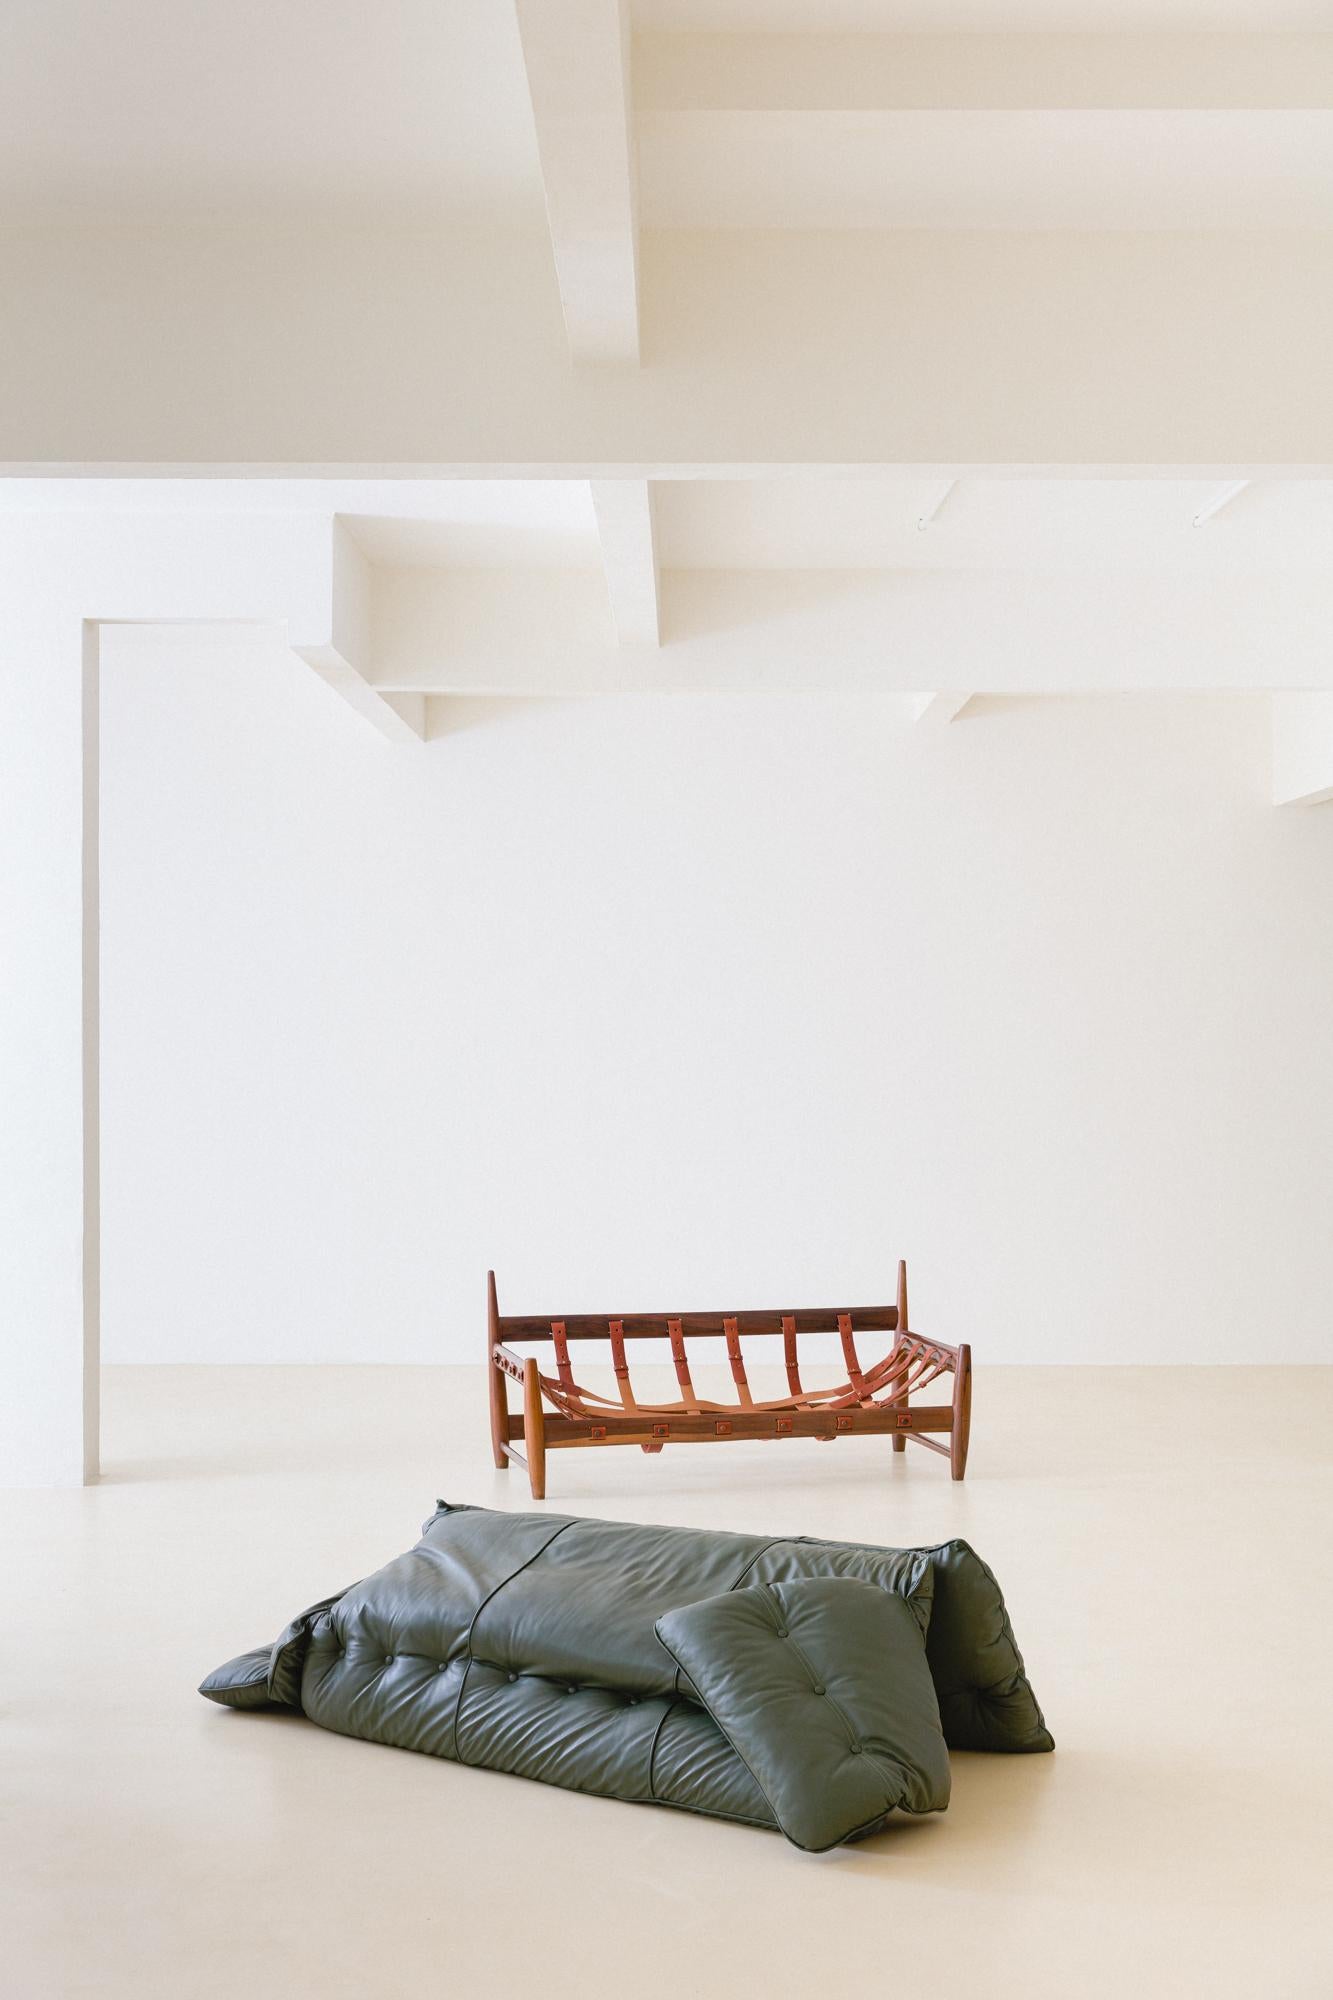 Das ikonische Sofa Mole ist das Markenzeichen von Sergio Rodrigues, das er zwischen 1956 und 1957 entwarf und aus dem der berühmte und preisgekrönte Sessel Mole hervorging. Auf Portugiesisch bedeutet 